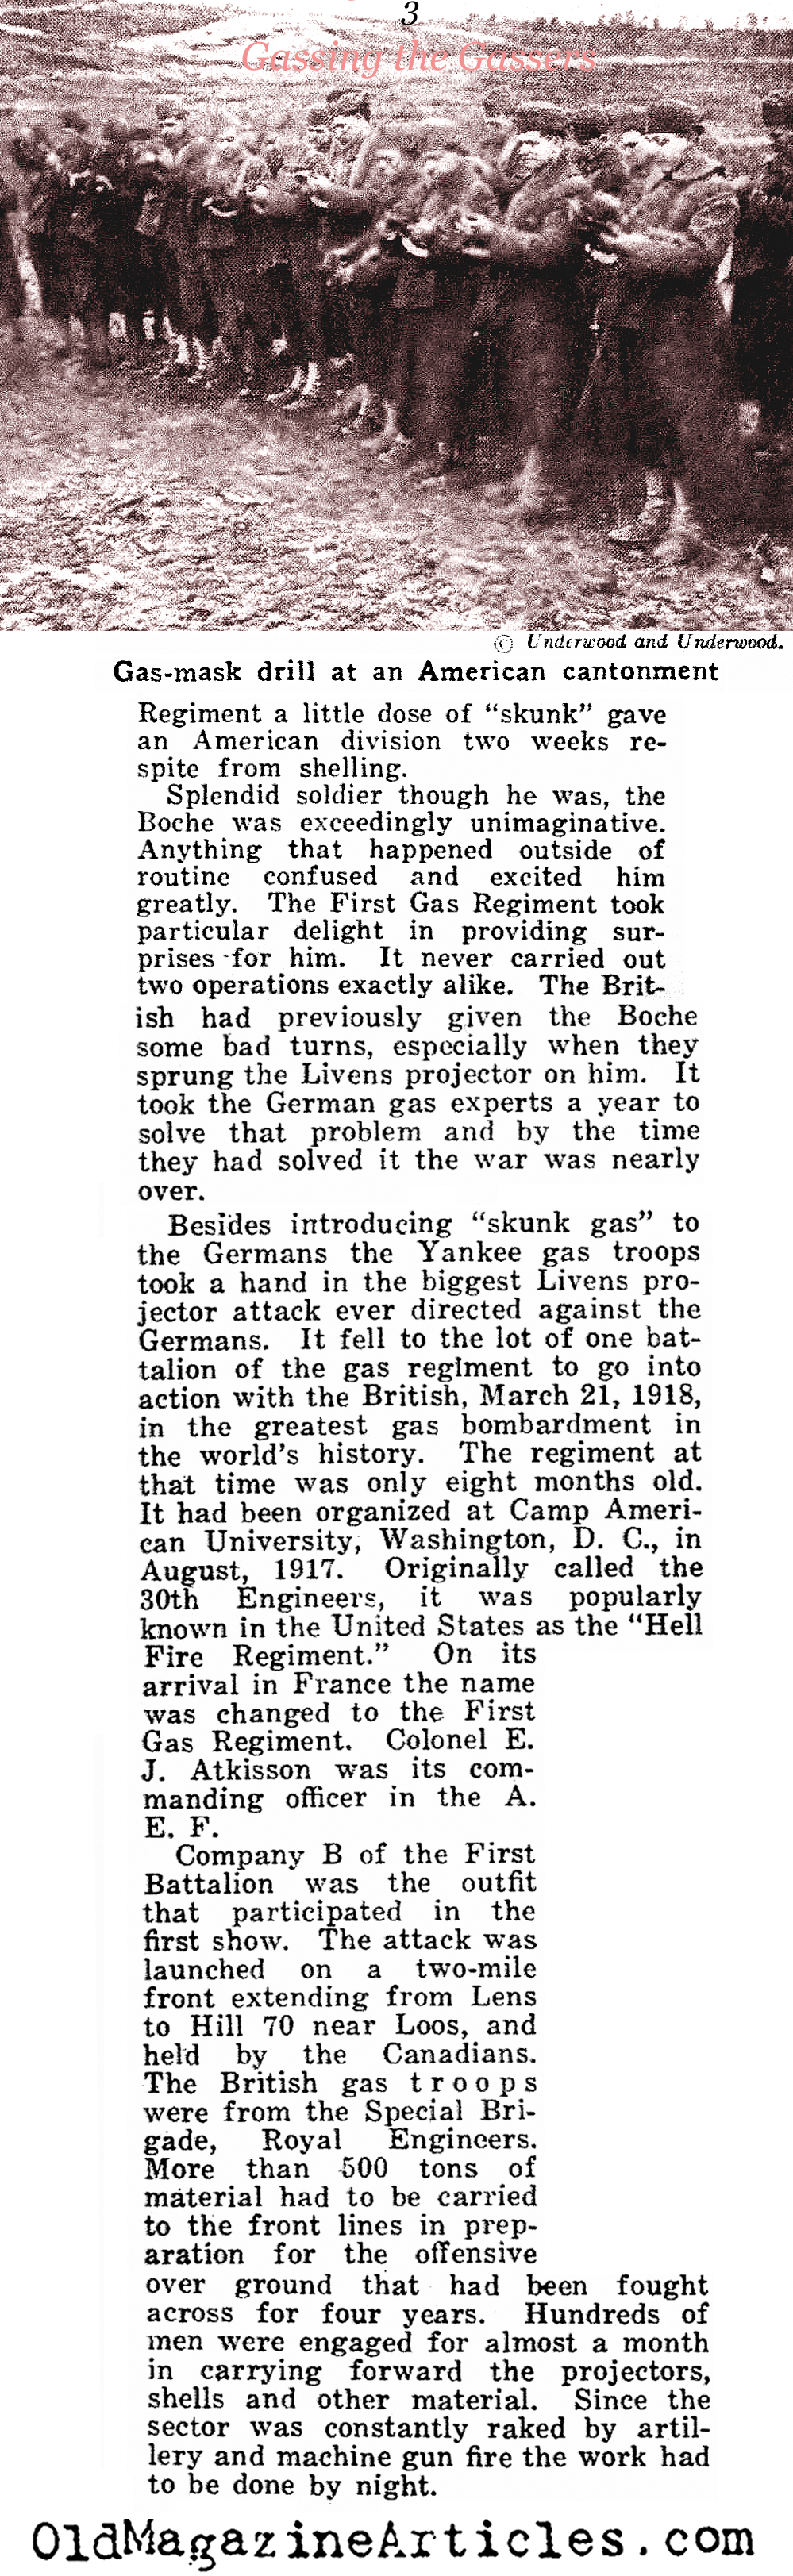 Gassing The Germans (American Legion Weekly, 1922)